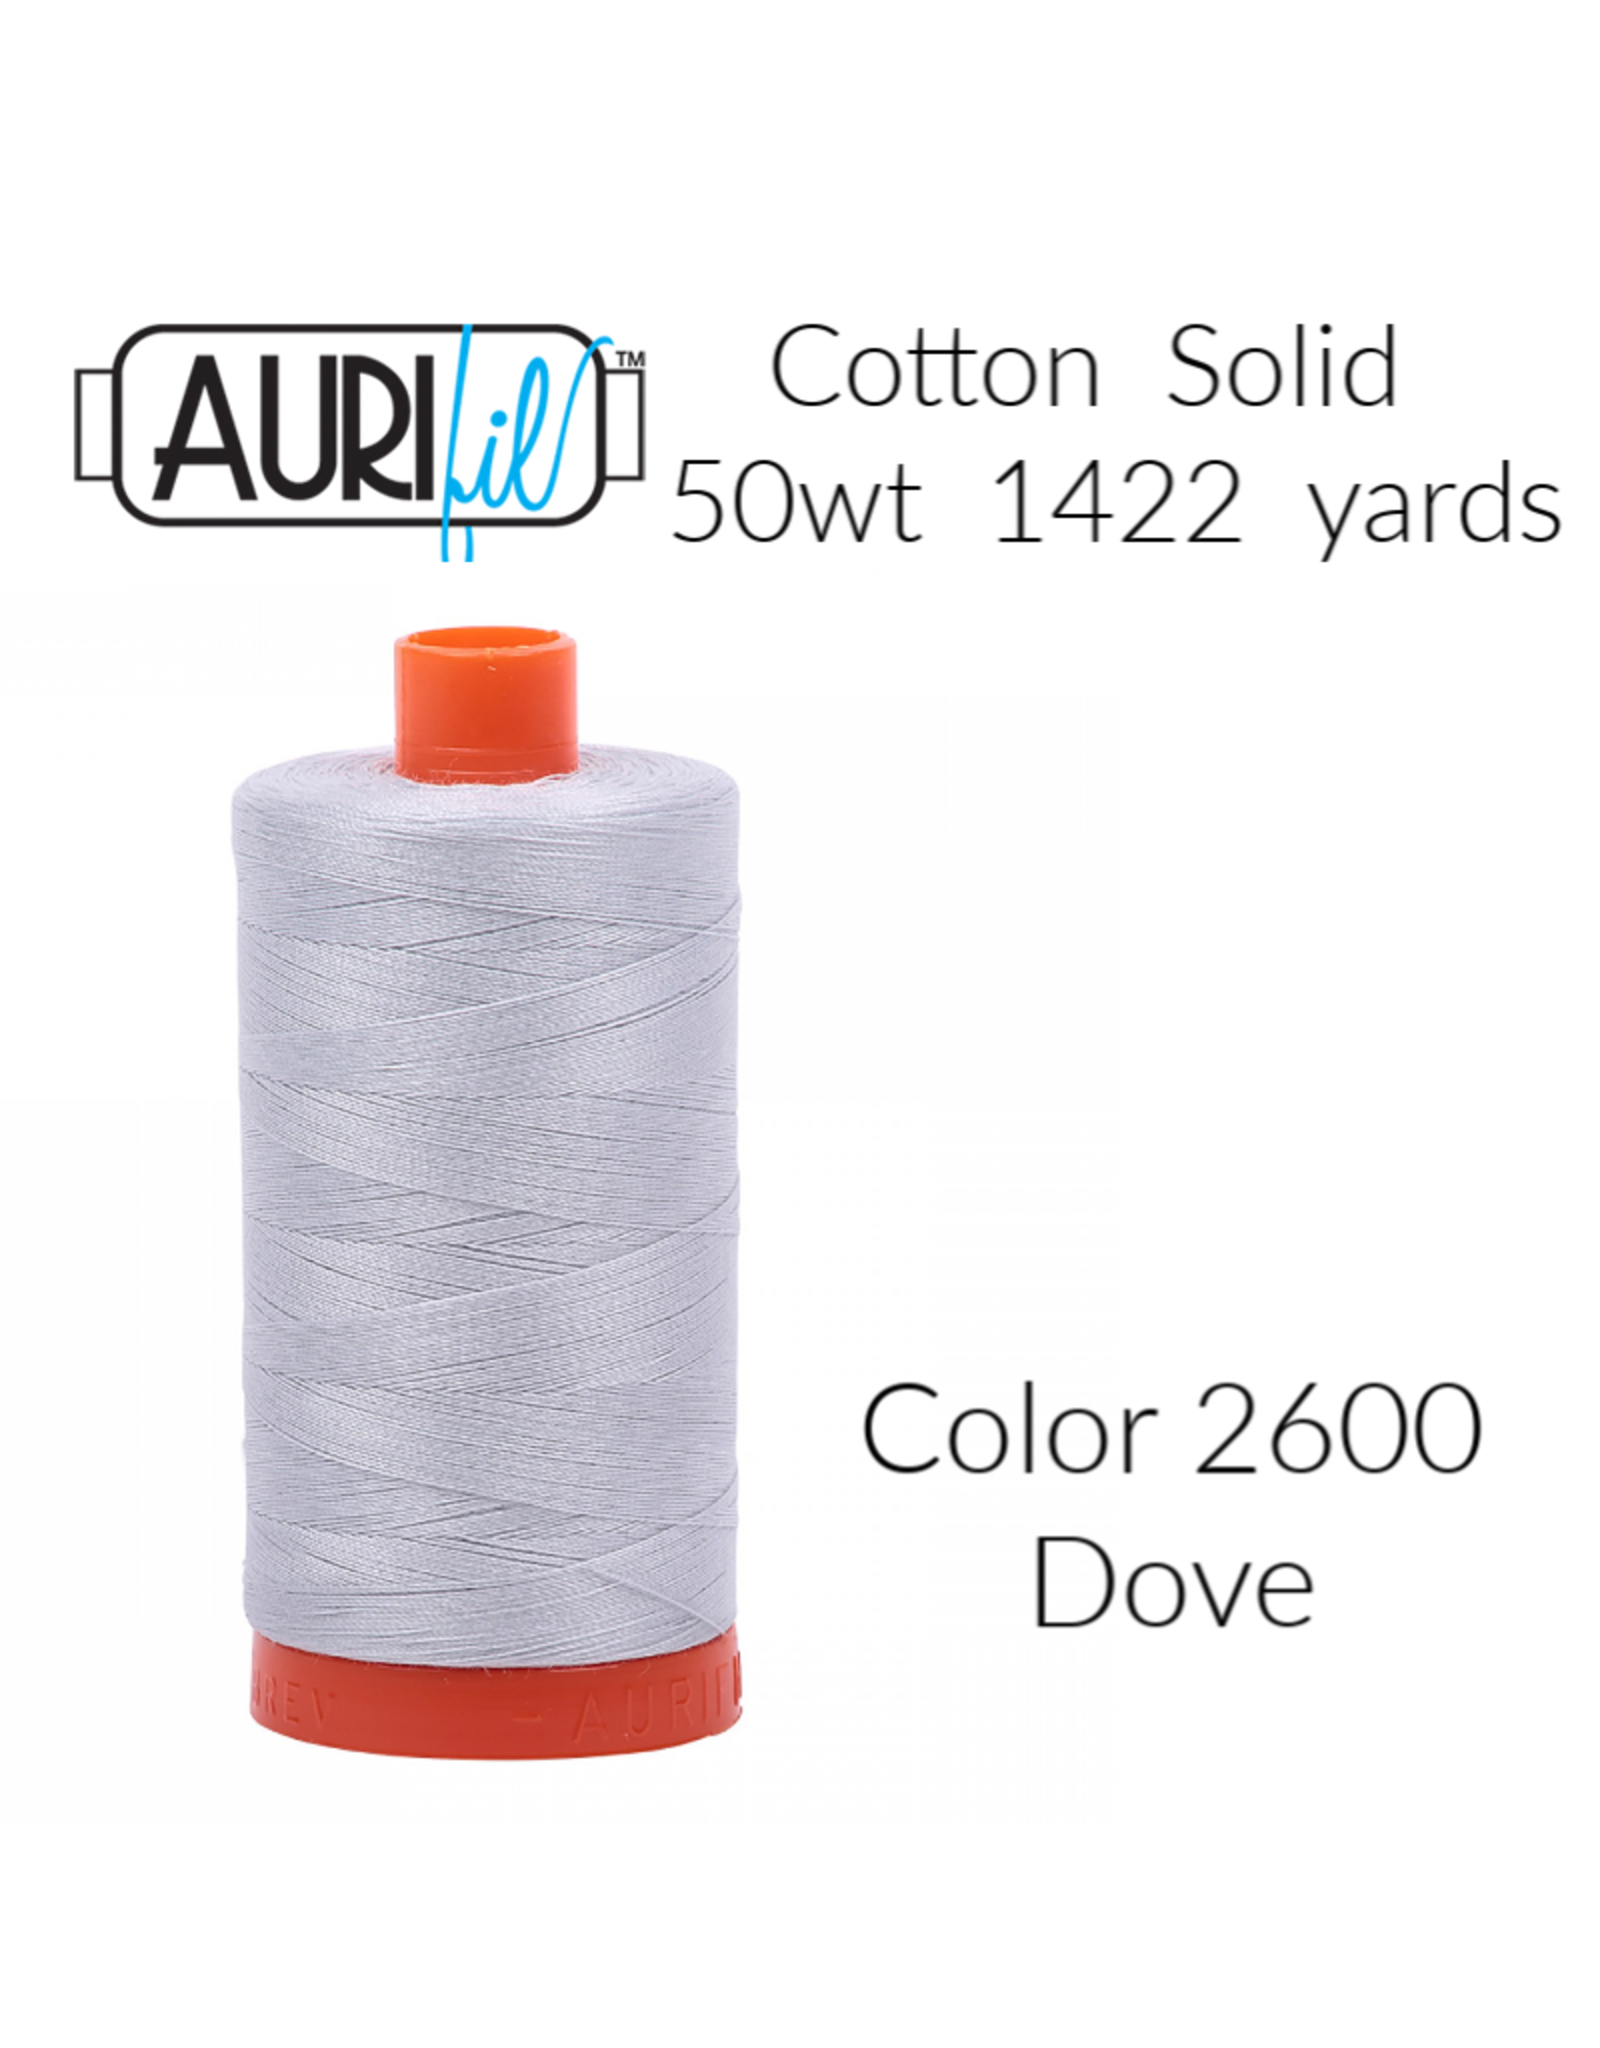 Aurifil Aurifil Thread, 50wt, 100% Cotton Mako, Large Spool 1422 yds. Color 2600: Dove